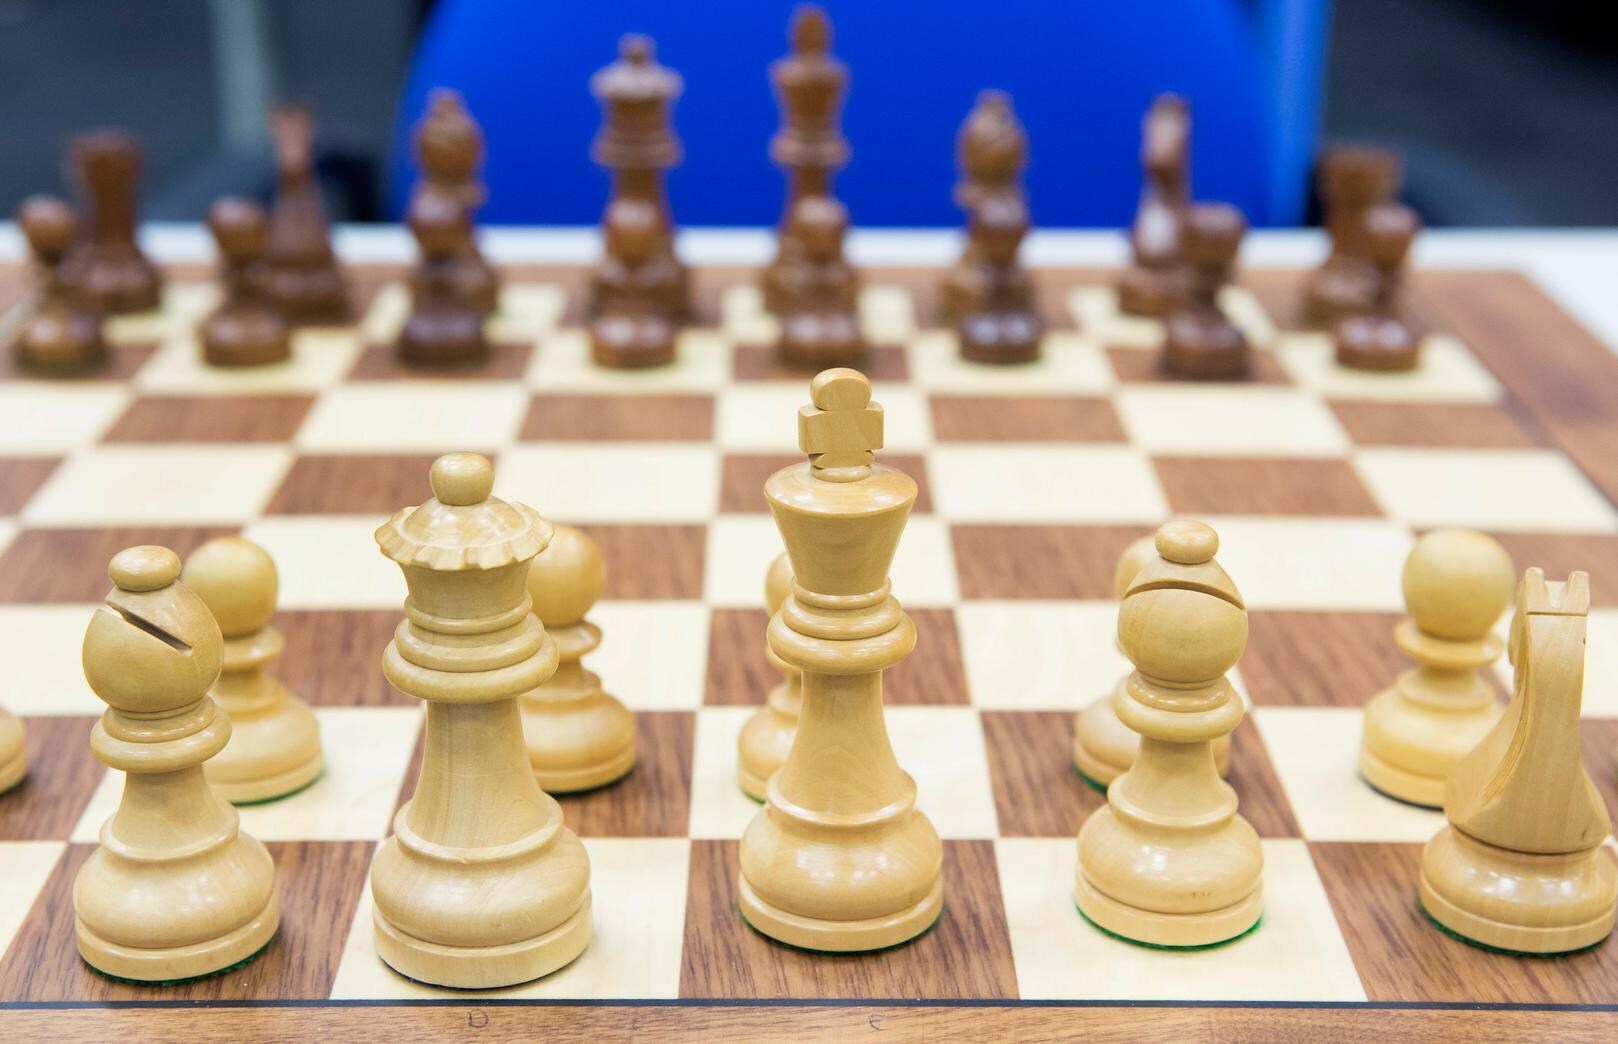 Firouzja (15)met grote  stappen op weg naar de internationale schaaktop